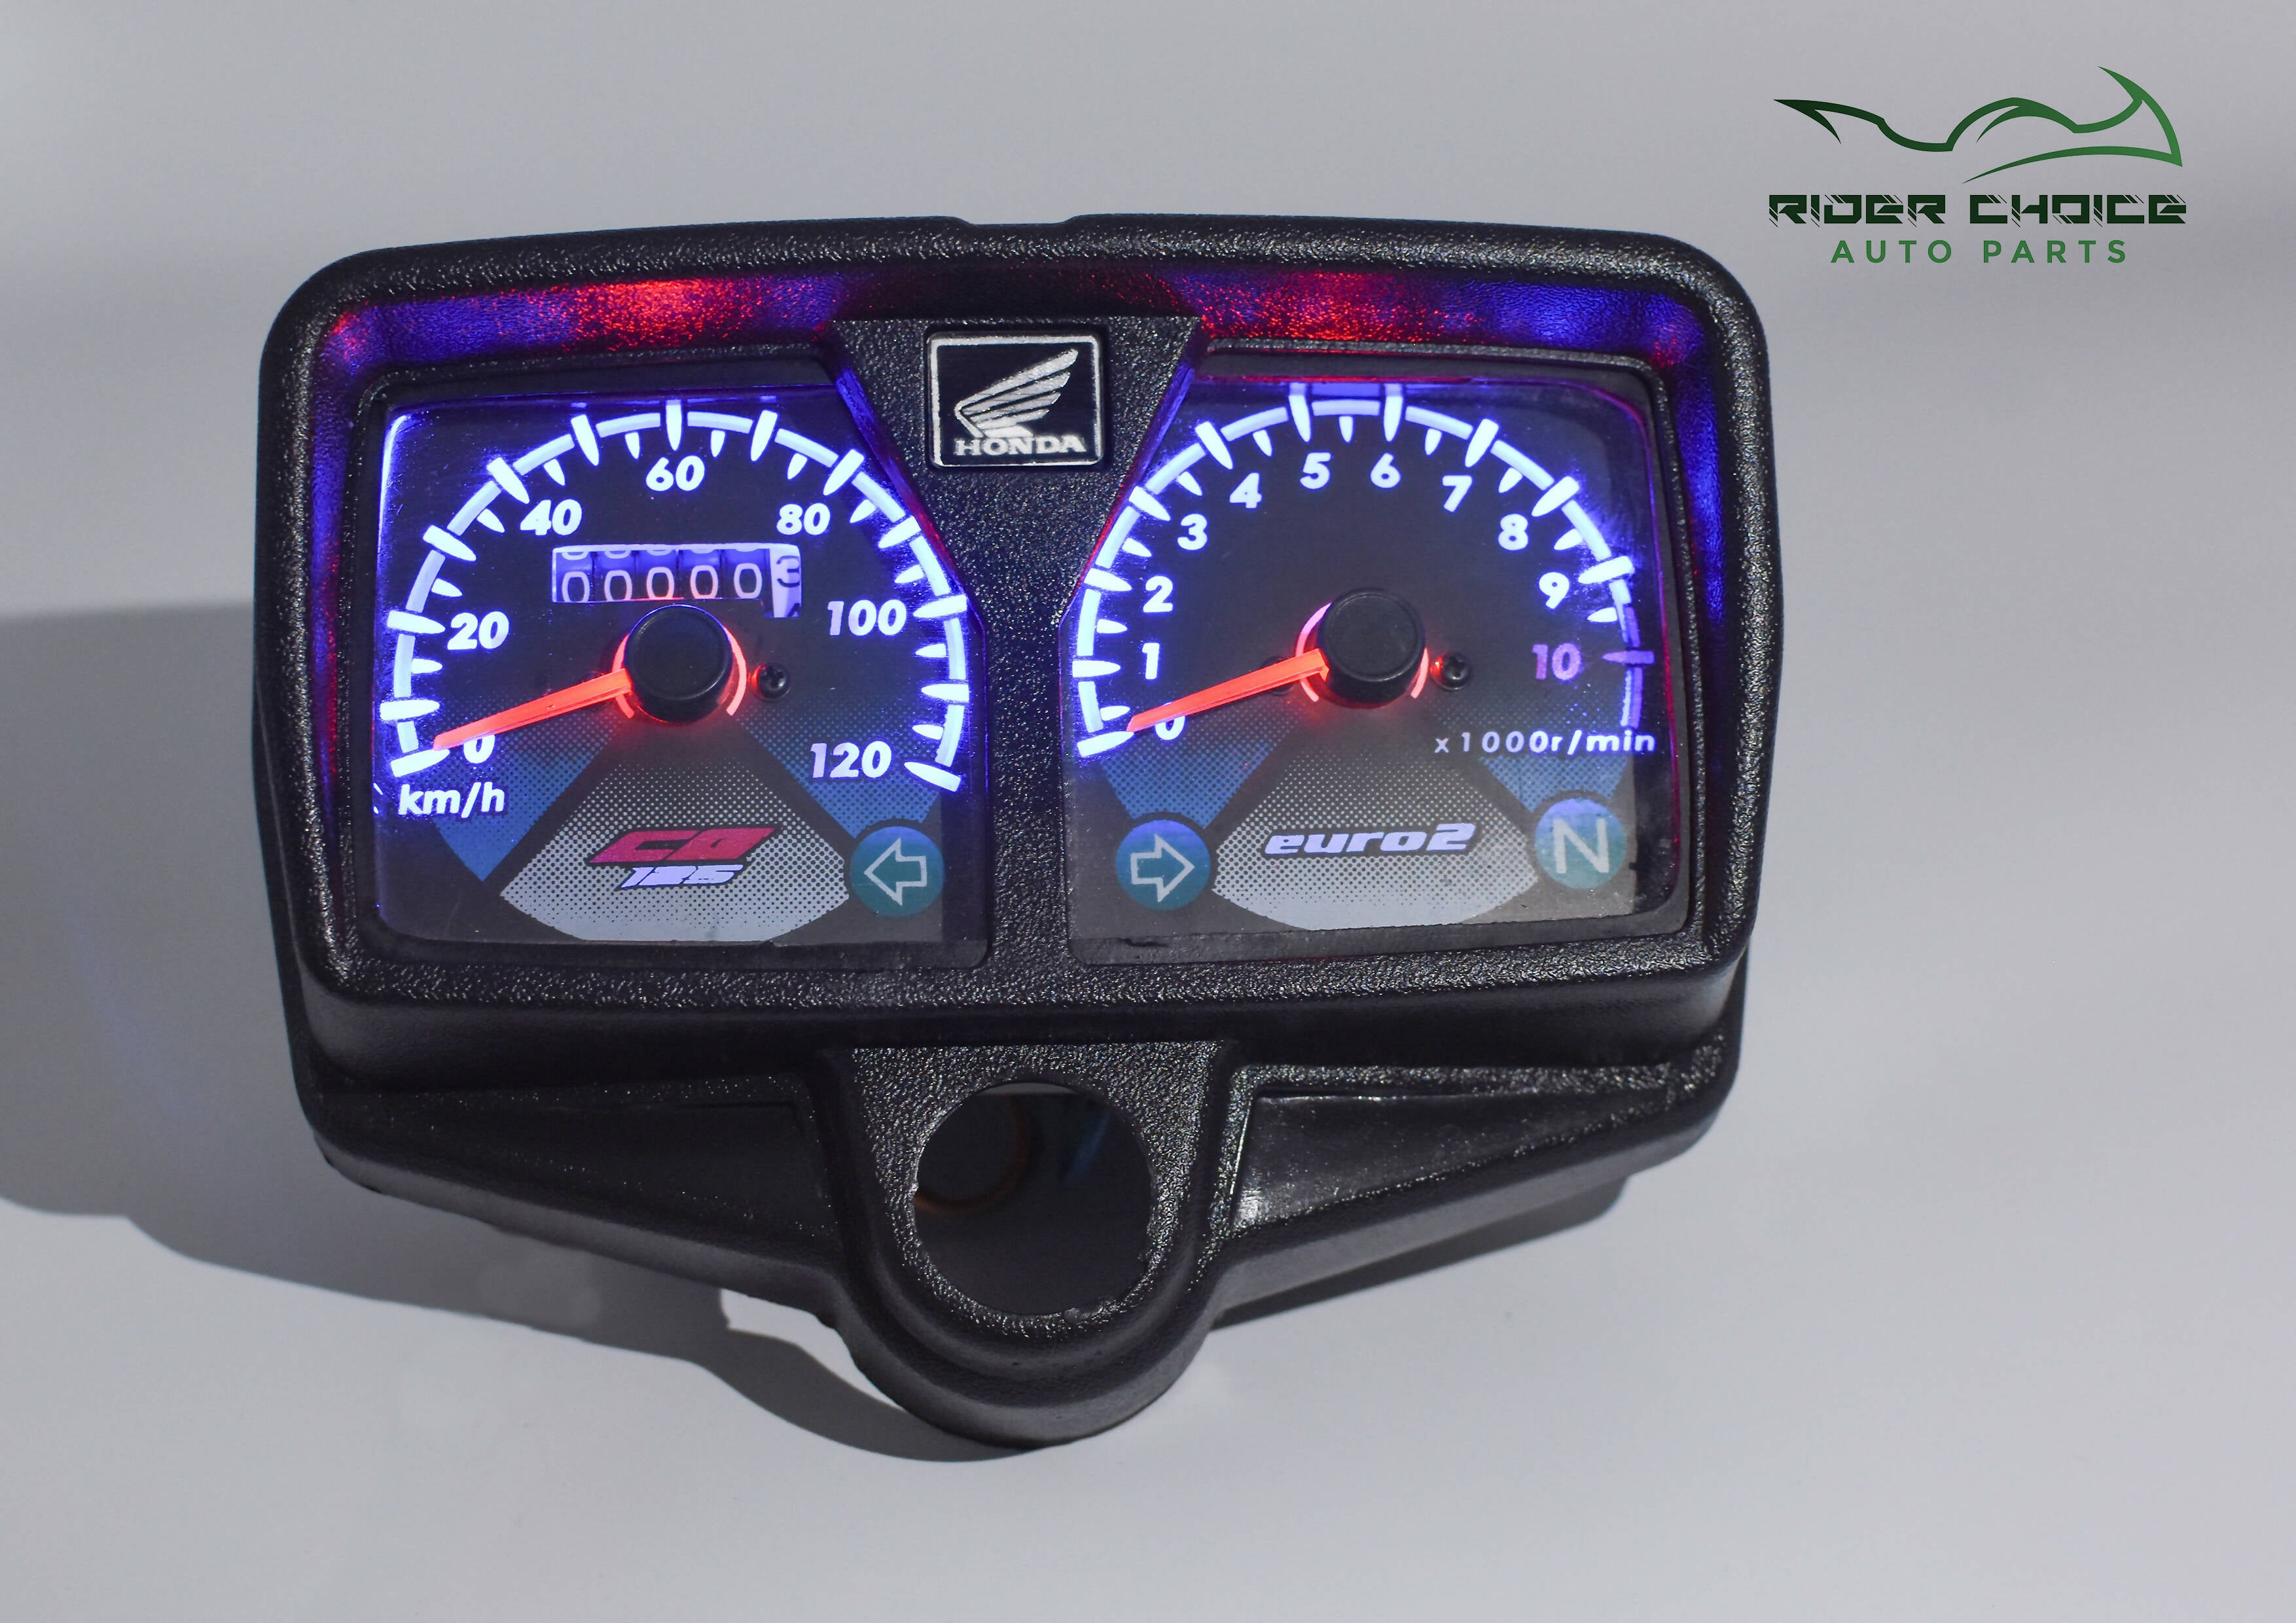 White LED Backlight Glow Meter Speedometer for Honda CG 125 Motorcycle (model euro 2)